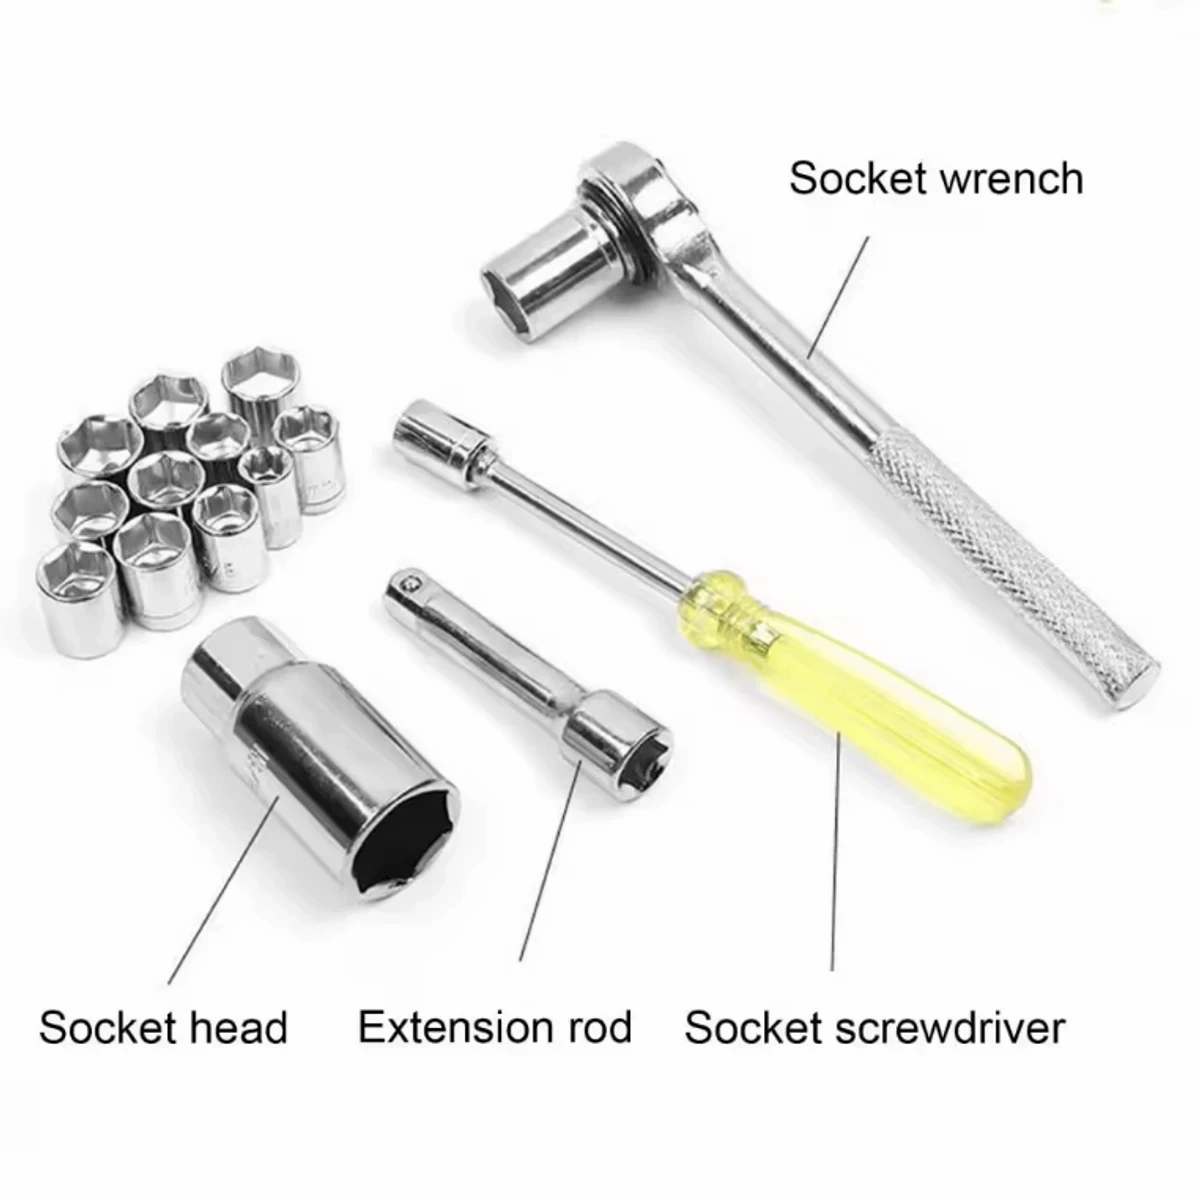 40 pcs socket wrench tool kit